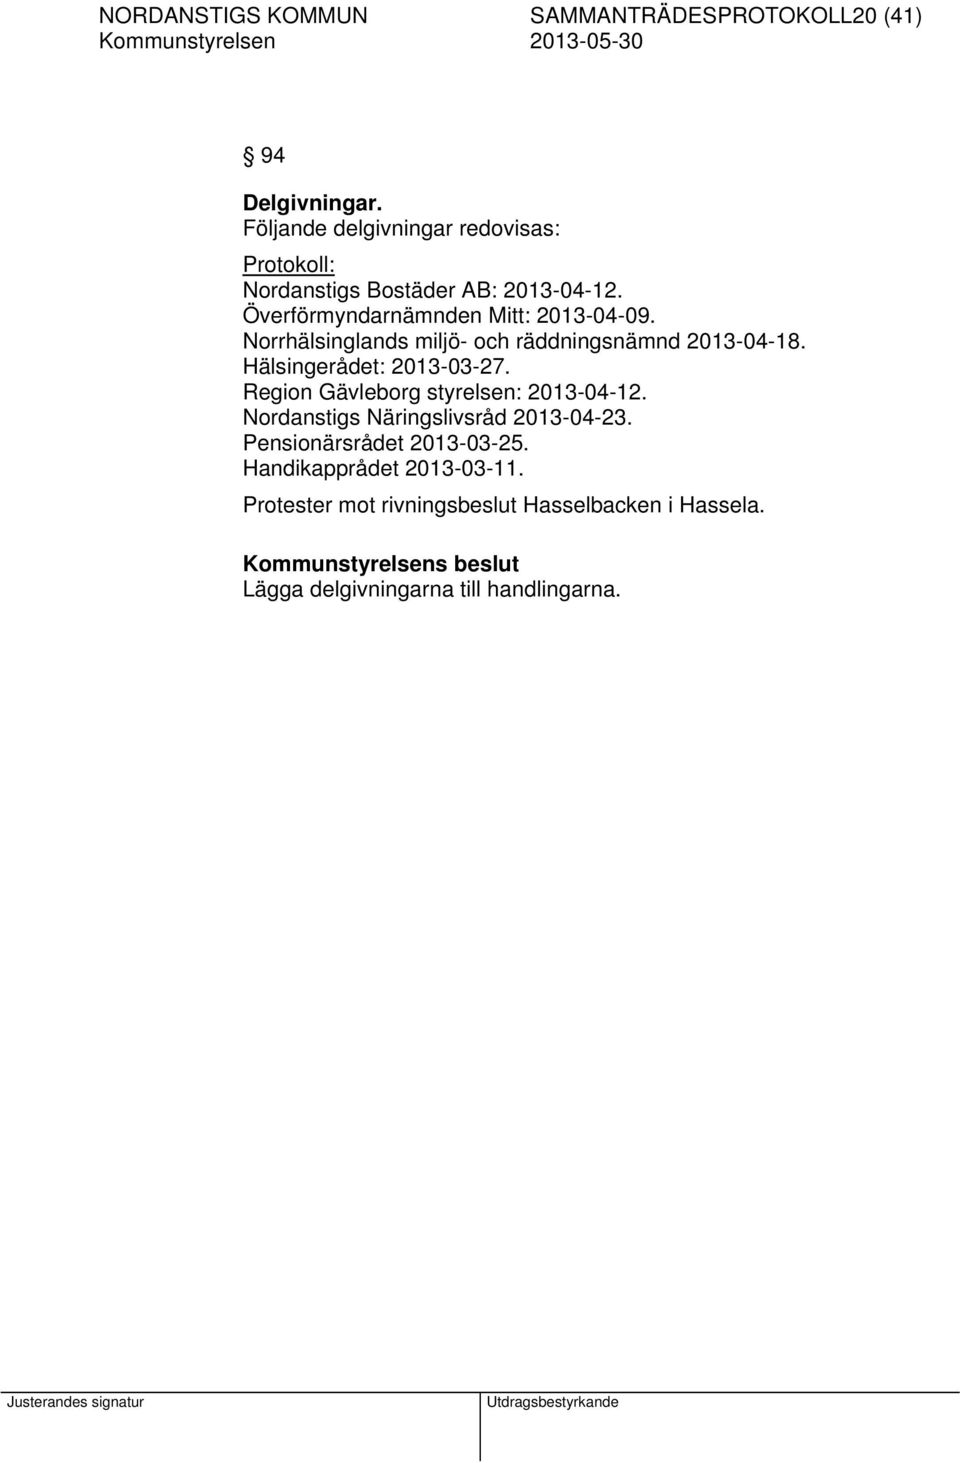 Norrhälsinglands miljö- och räddningsnämnd 2013-04-18. Hälsingerådet: 2013-03-27. Region Gävleborg styrelsen: 2013-04-12.